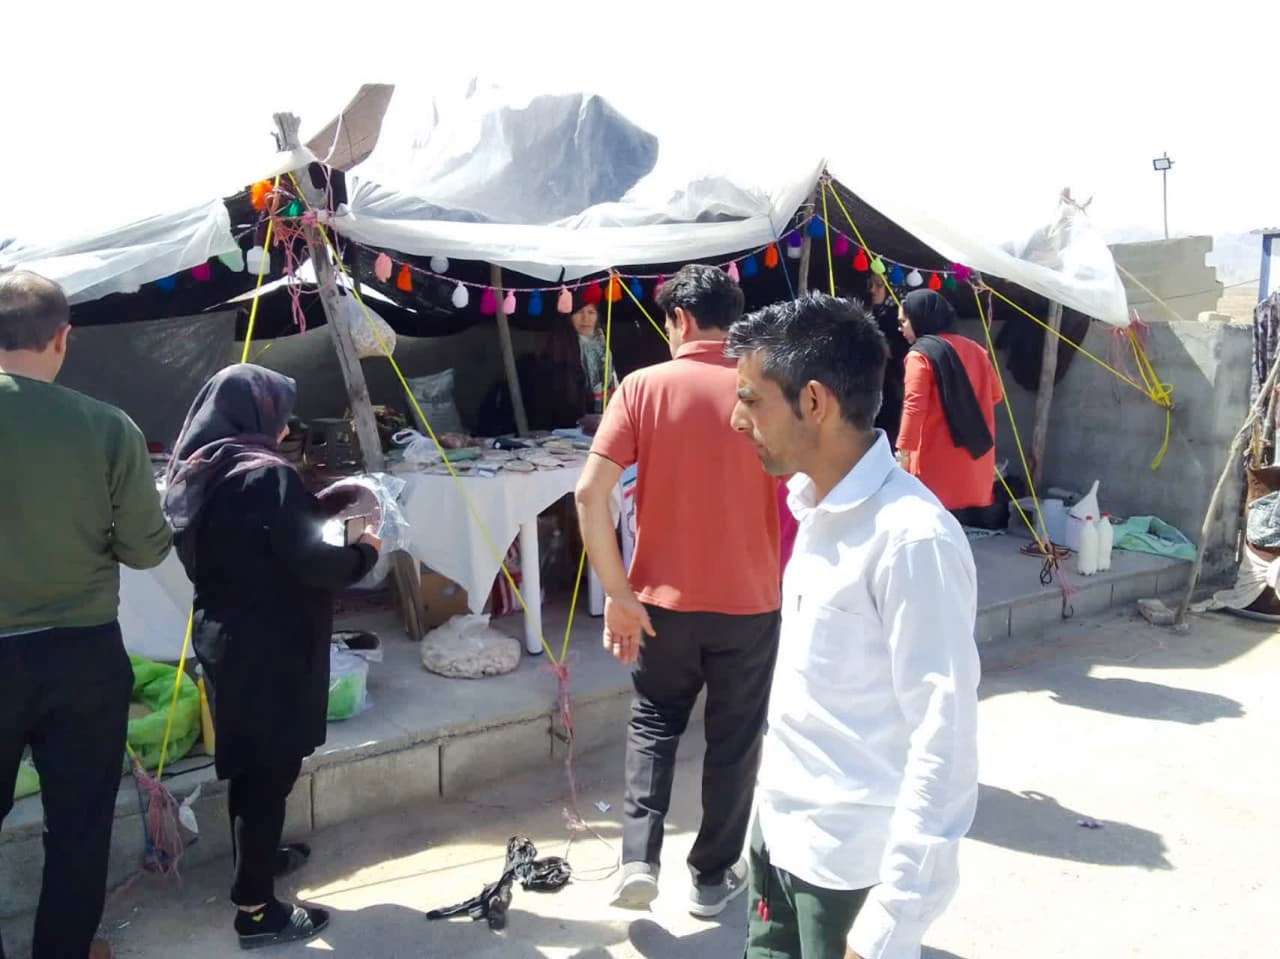 استراحتگاه نوروزی روستای اصفاک شهرستان بشرویه واقع در محور طبس به بشرویه